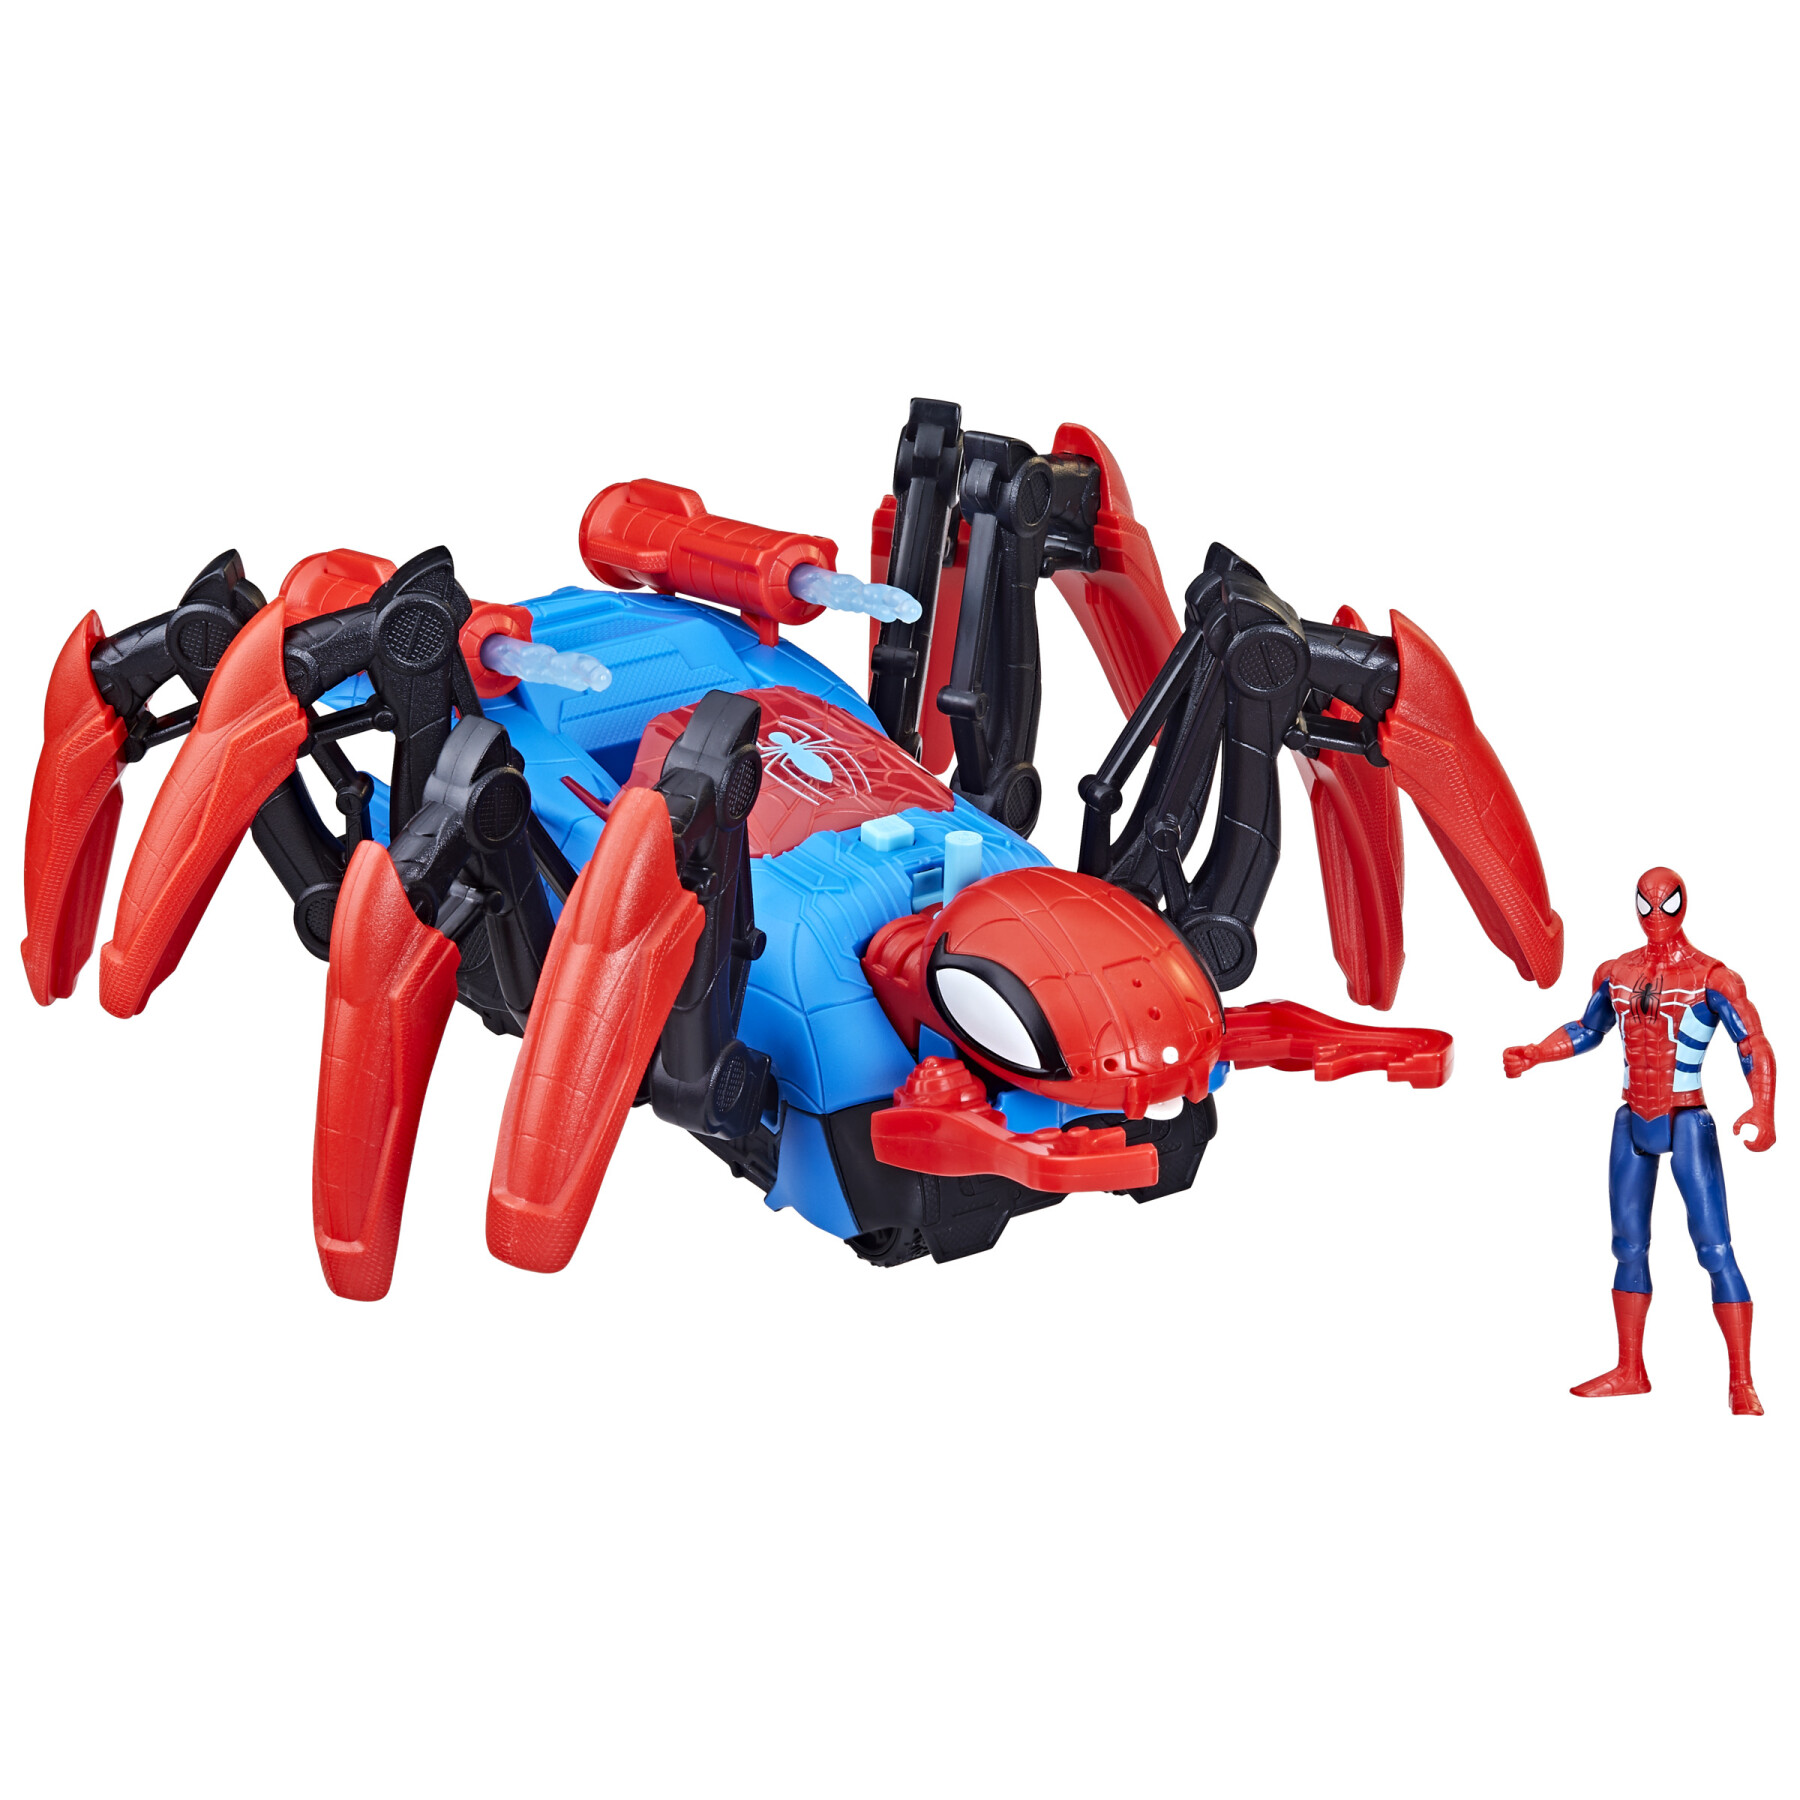 Hasbro marvel, spider-man, crawl 'n blast spider, dai 4 anni in su, lancia ragnatele e acqua - Spiderman